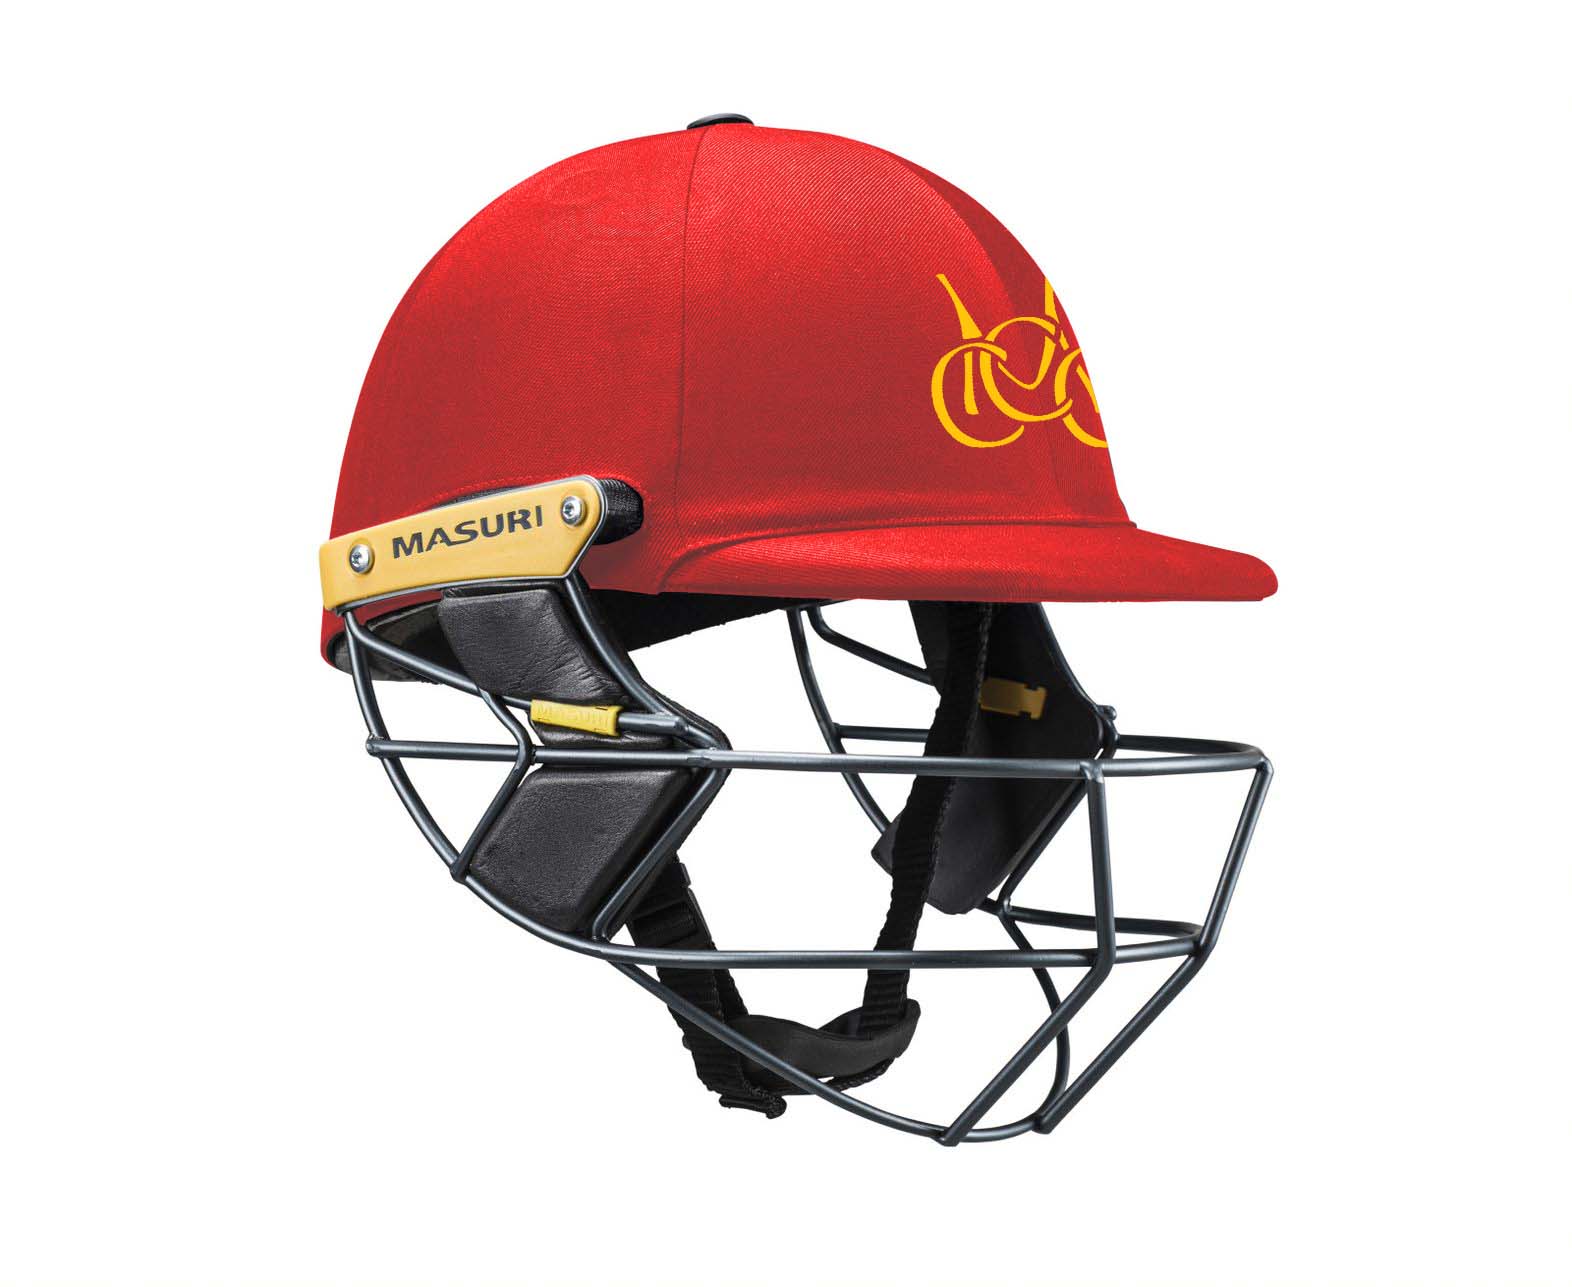 Masuri Club Helmet Melton Centrals Cricket Club Helmet